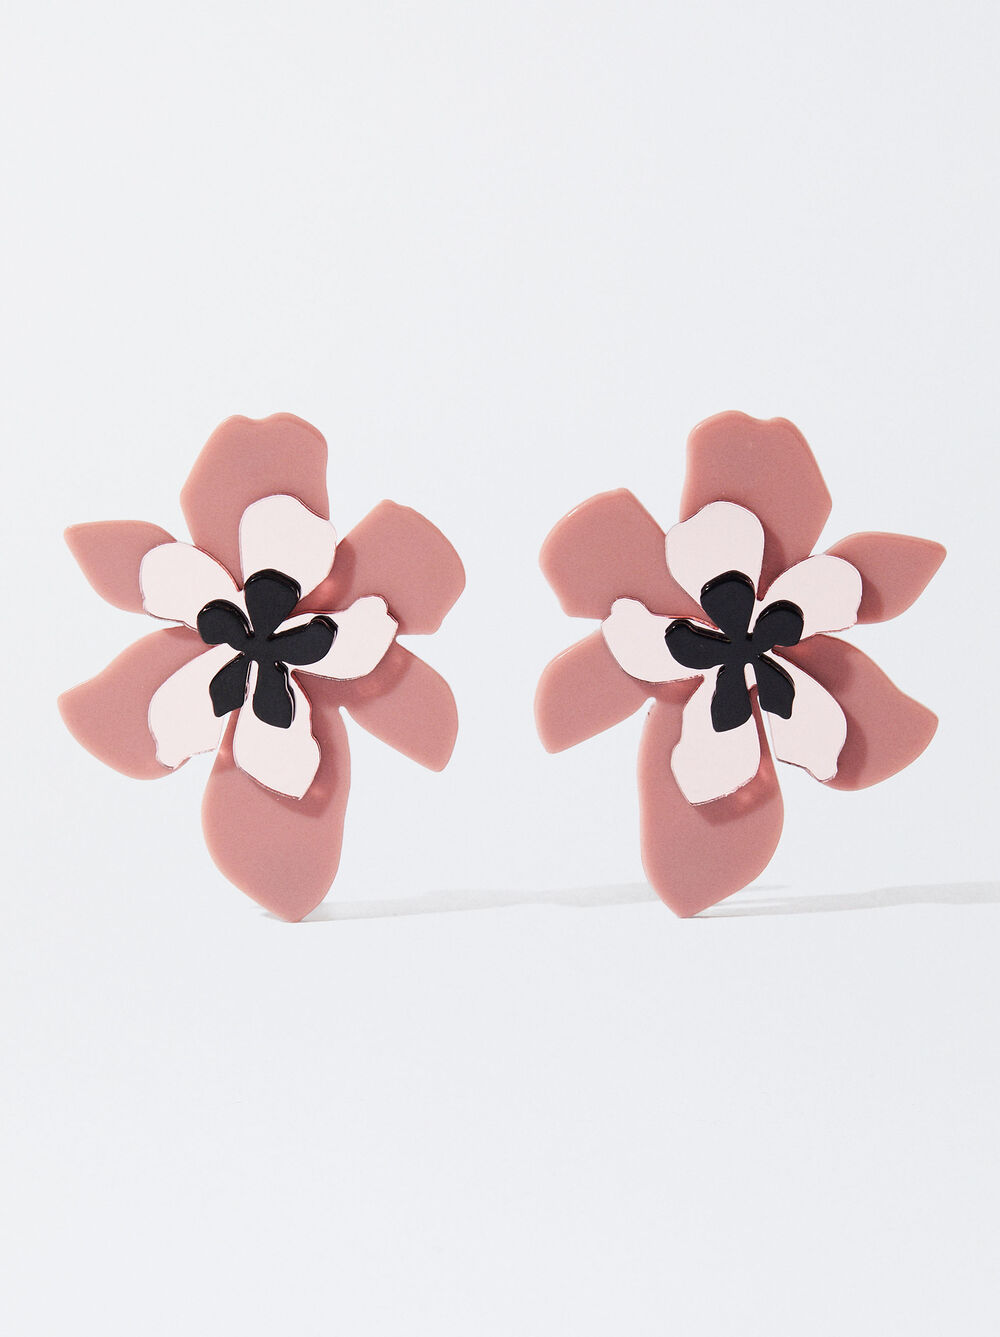 Online Exclusive - Resin Flower Earrings